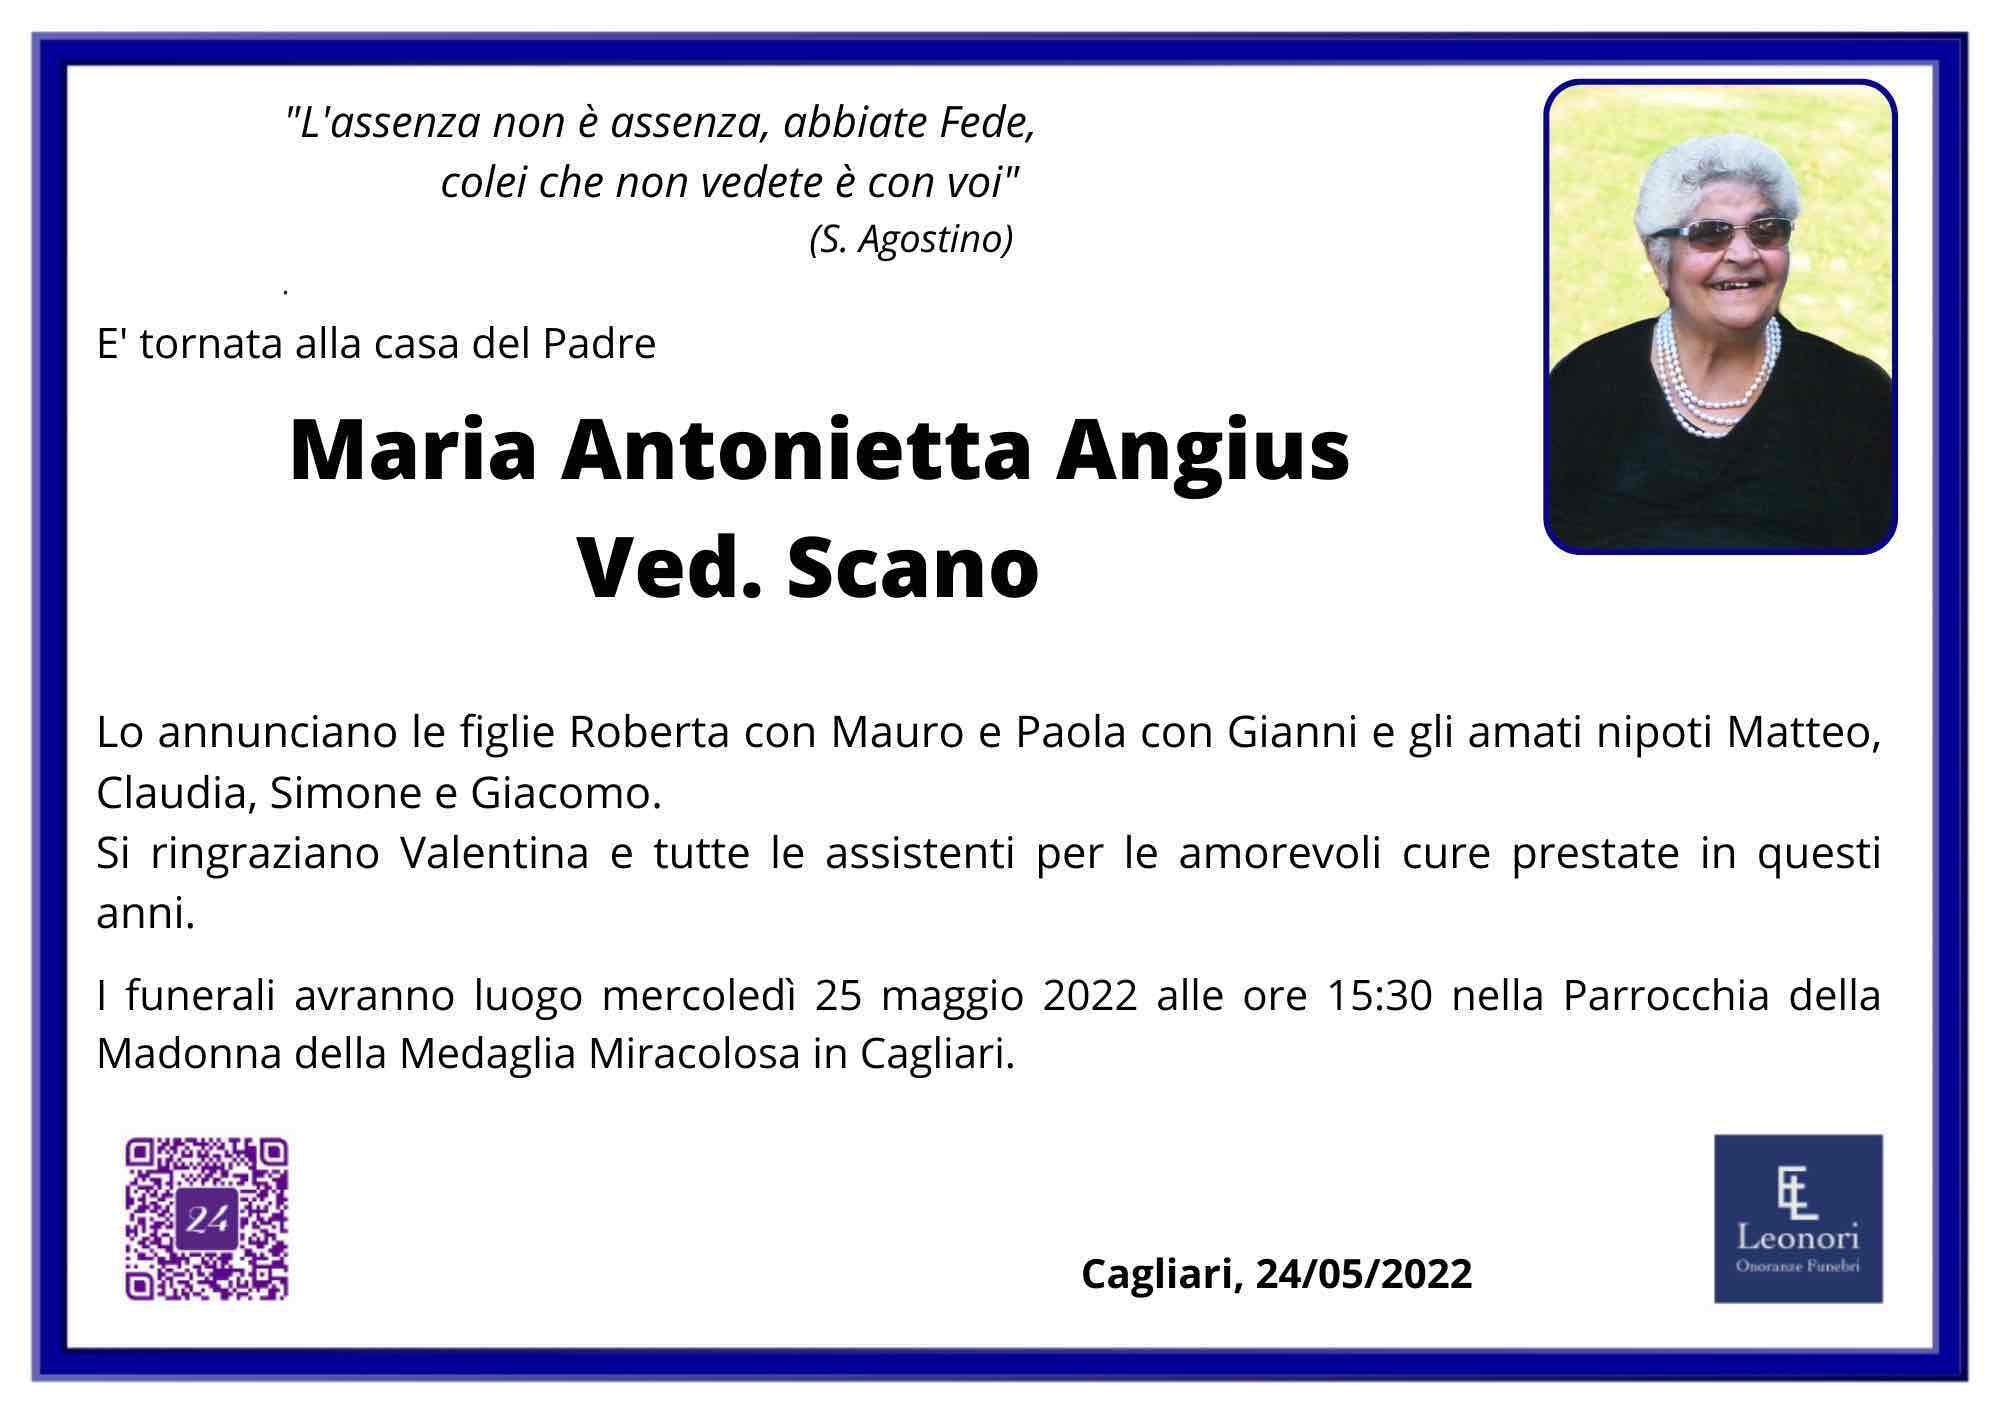 Maria Antonietta Angius